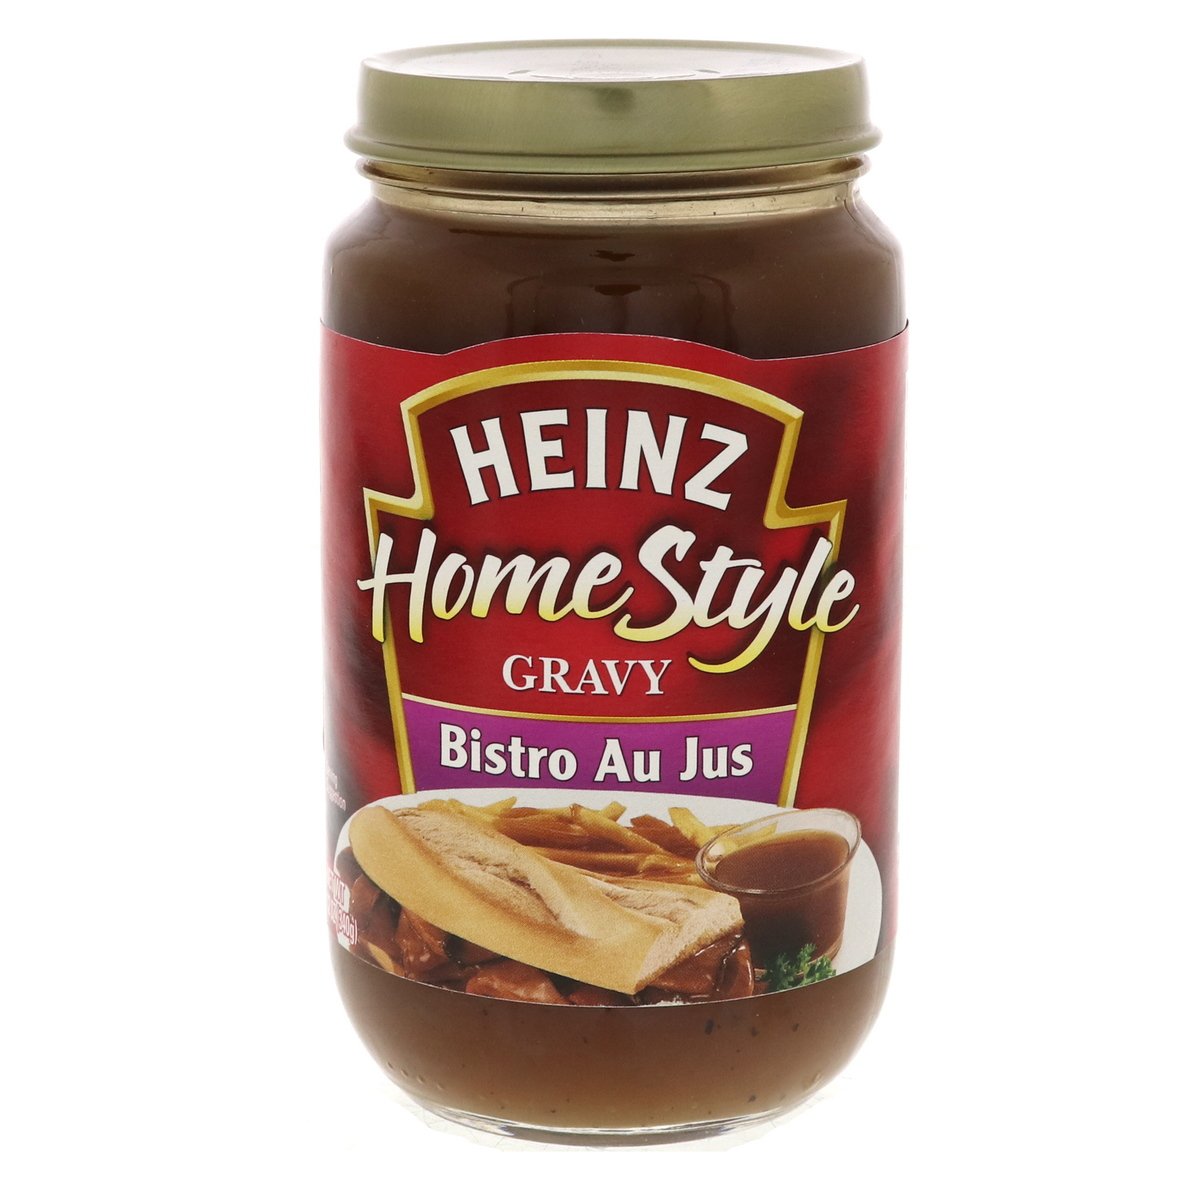 Heinz Home Style Gravy Bistro Au Jus 340 g